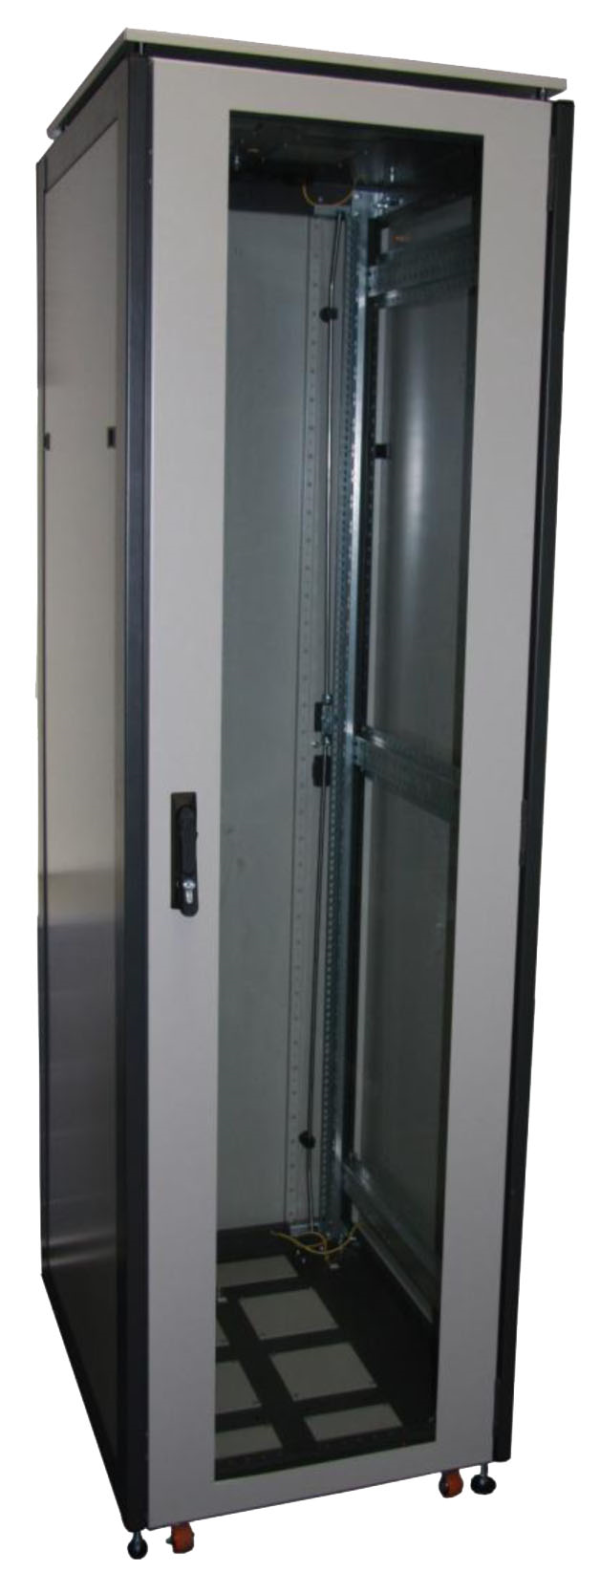 ССКТБ ТОМАСС ШТК-6822Э-01 - шкаф телекоммуникационный 19", 47U, 600х800х2200 мм, с металлической задней панелью и стеклянной дверью